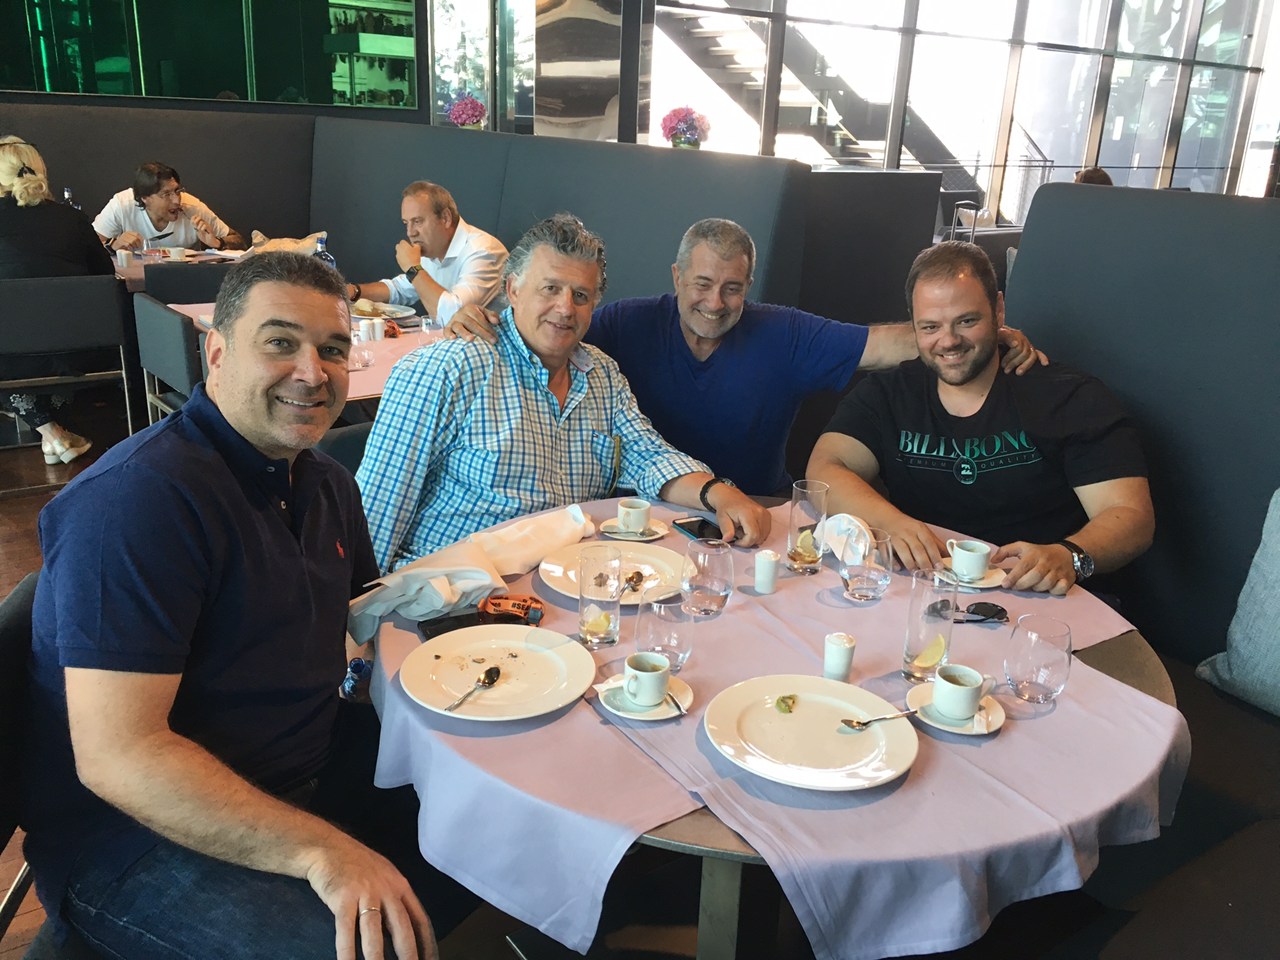 Σημερινή φωτογραφία με τους (από αριστερά), Χάρης Δάνδουρας, Γιάννης Σταυρόπουλος, Στράτης Χατζηπαναγιώτου και Τάκης Τρακουσέλλης.